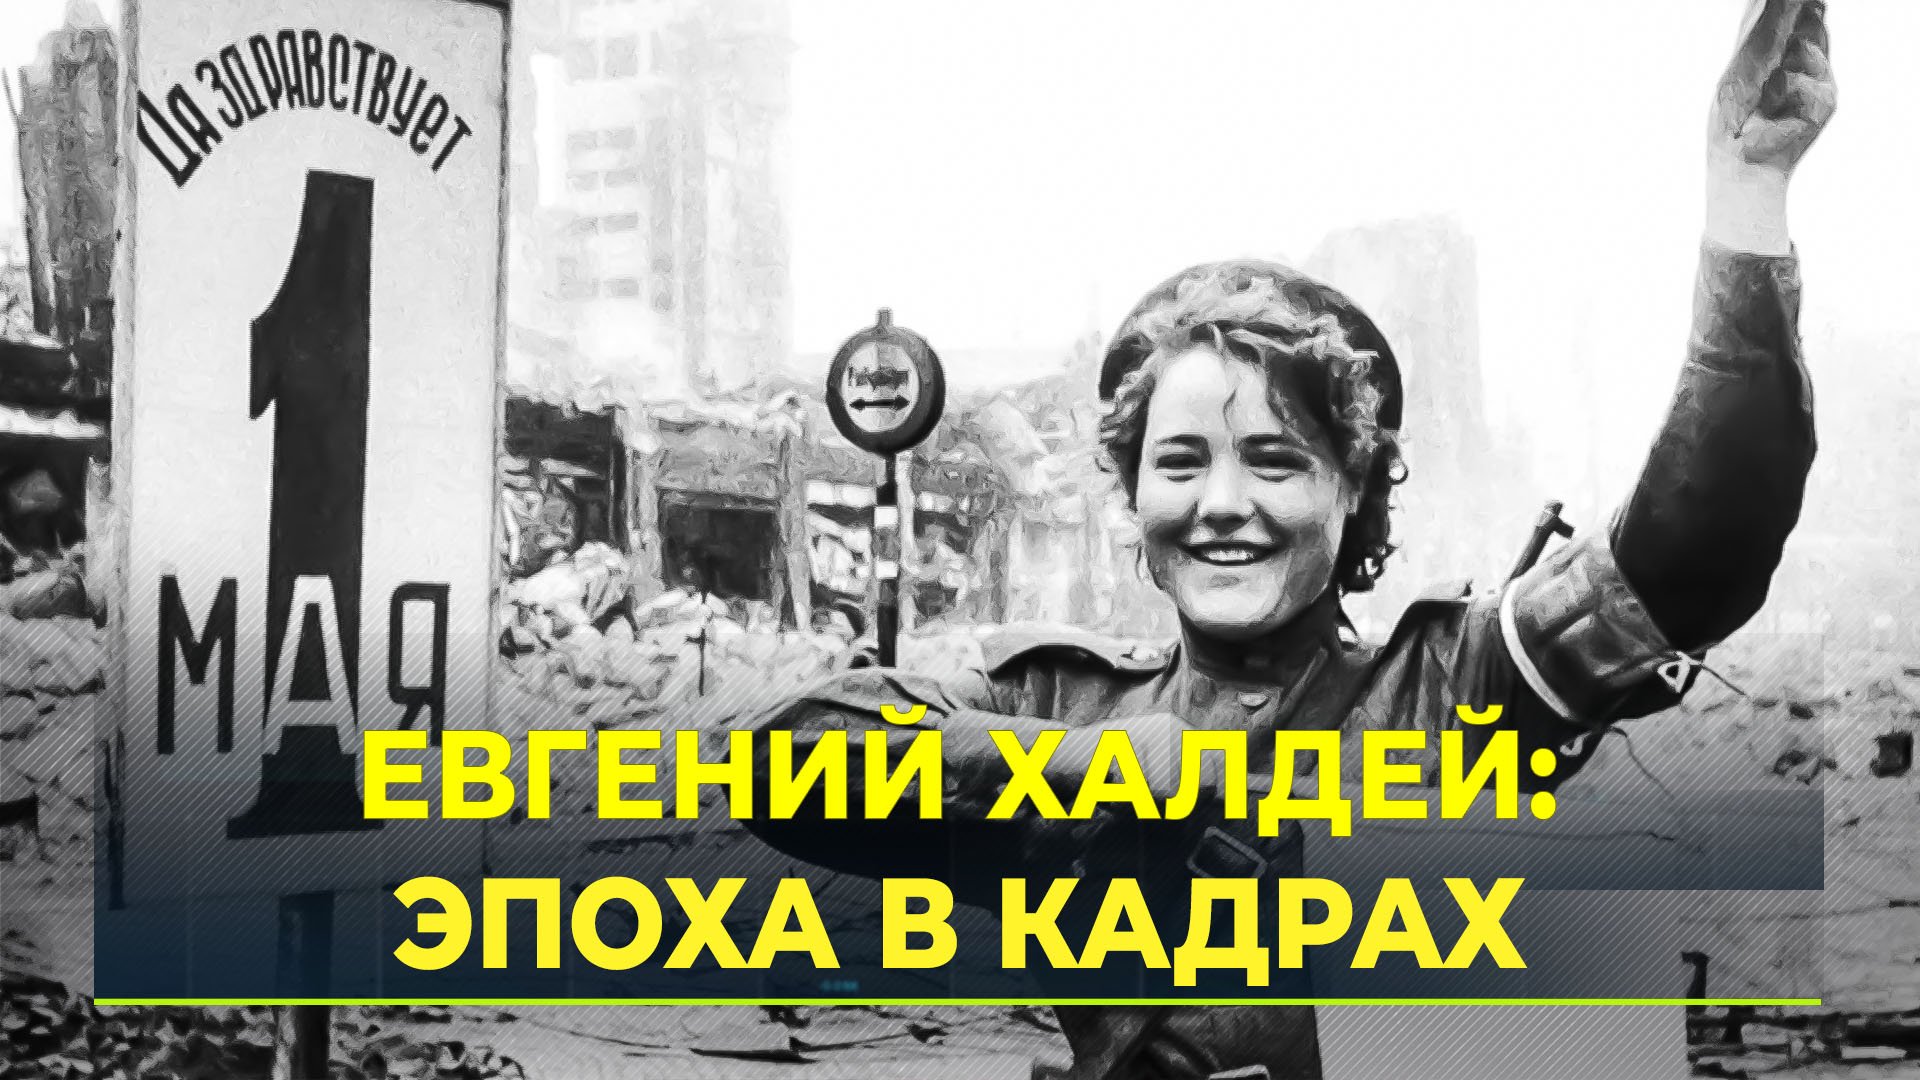 В Салехарде открылась выставка знаменитого советского фотографа